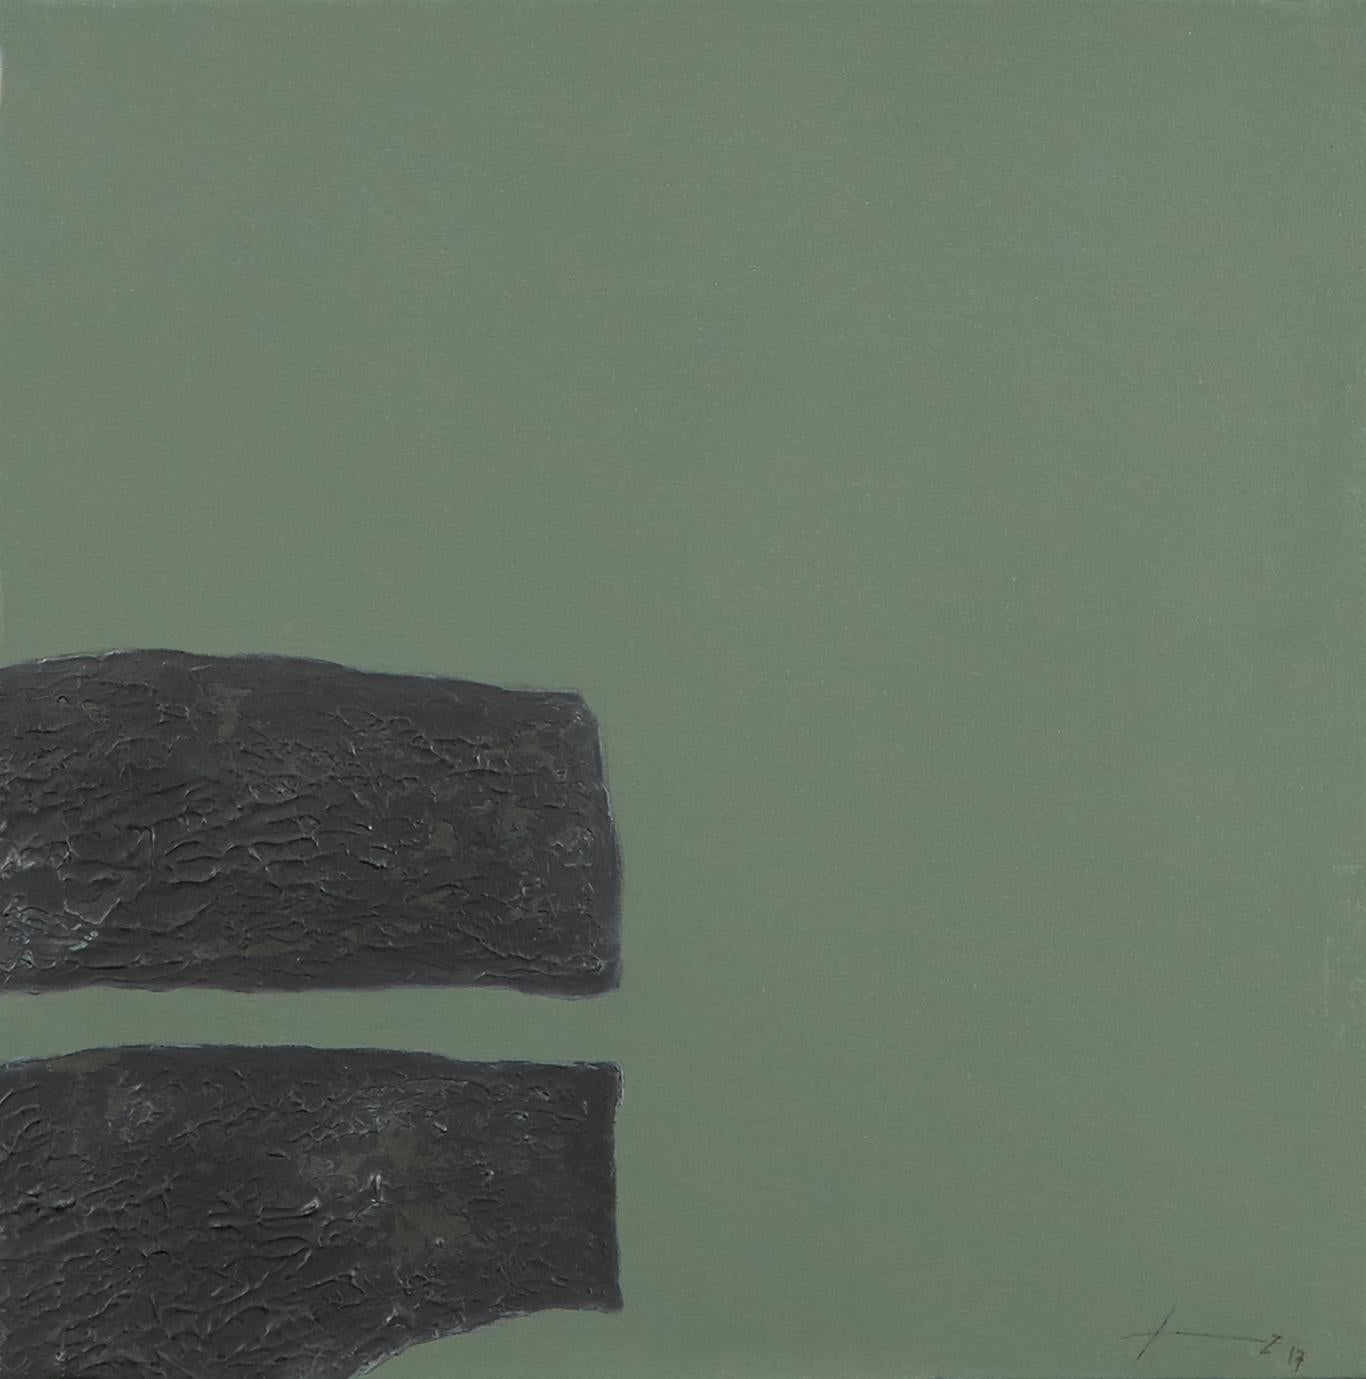 Pierres XXIII - 21e siècle, contemporain, peinture abstraite, techniques mixtes